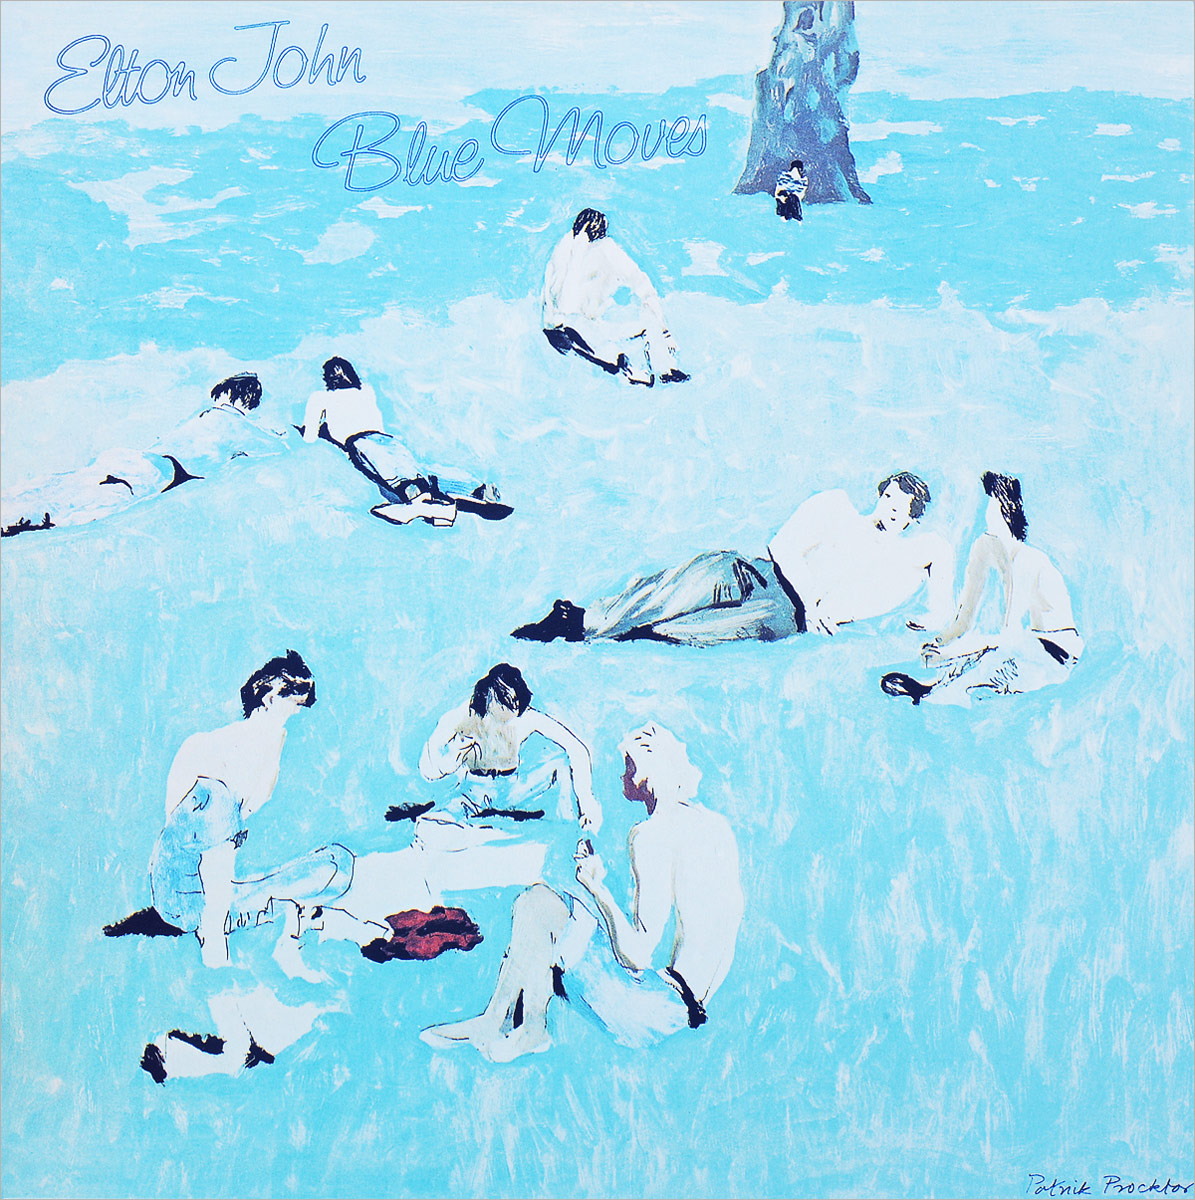 Elton John. Blue Moves (2 LP)